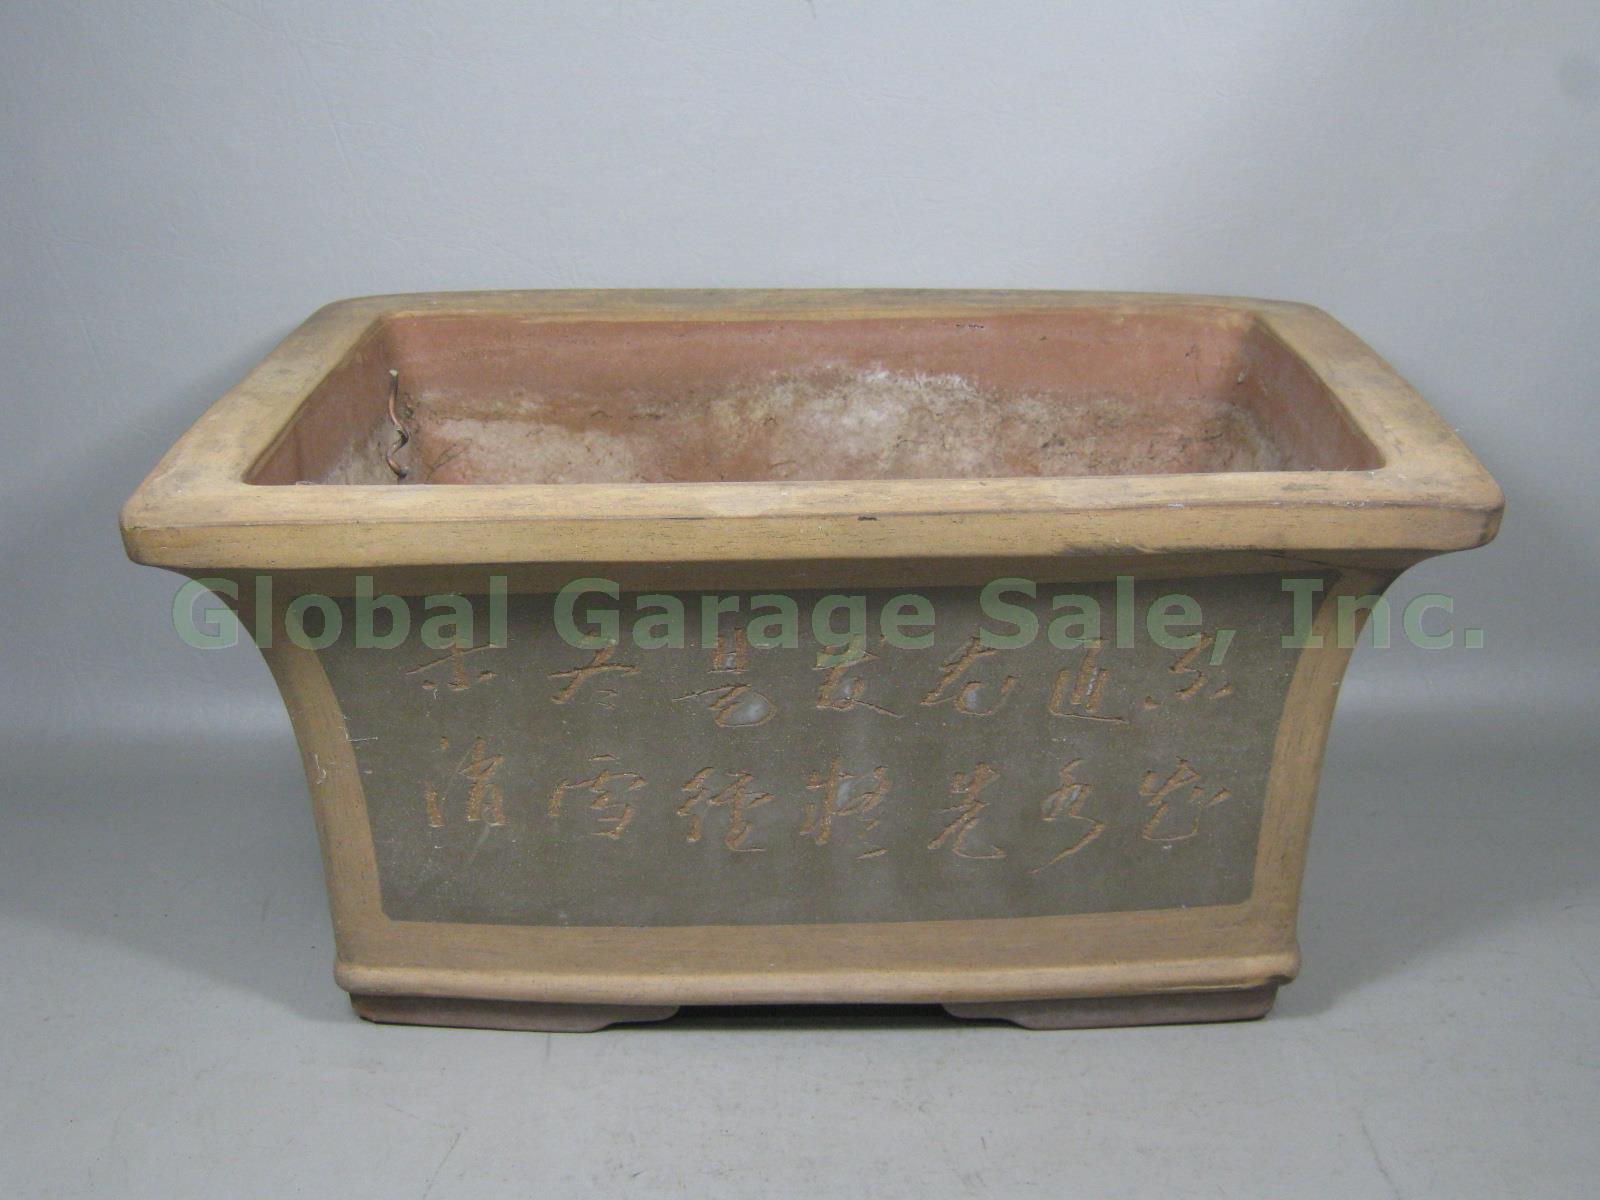 Large Rectangular Rectangle Ceramic Bonsai Pot Chinese? 19.25" x 14.25" x 9.25" 2